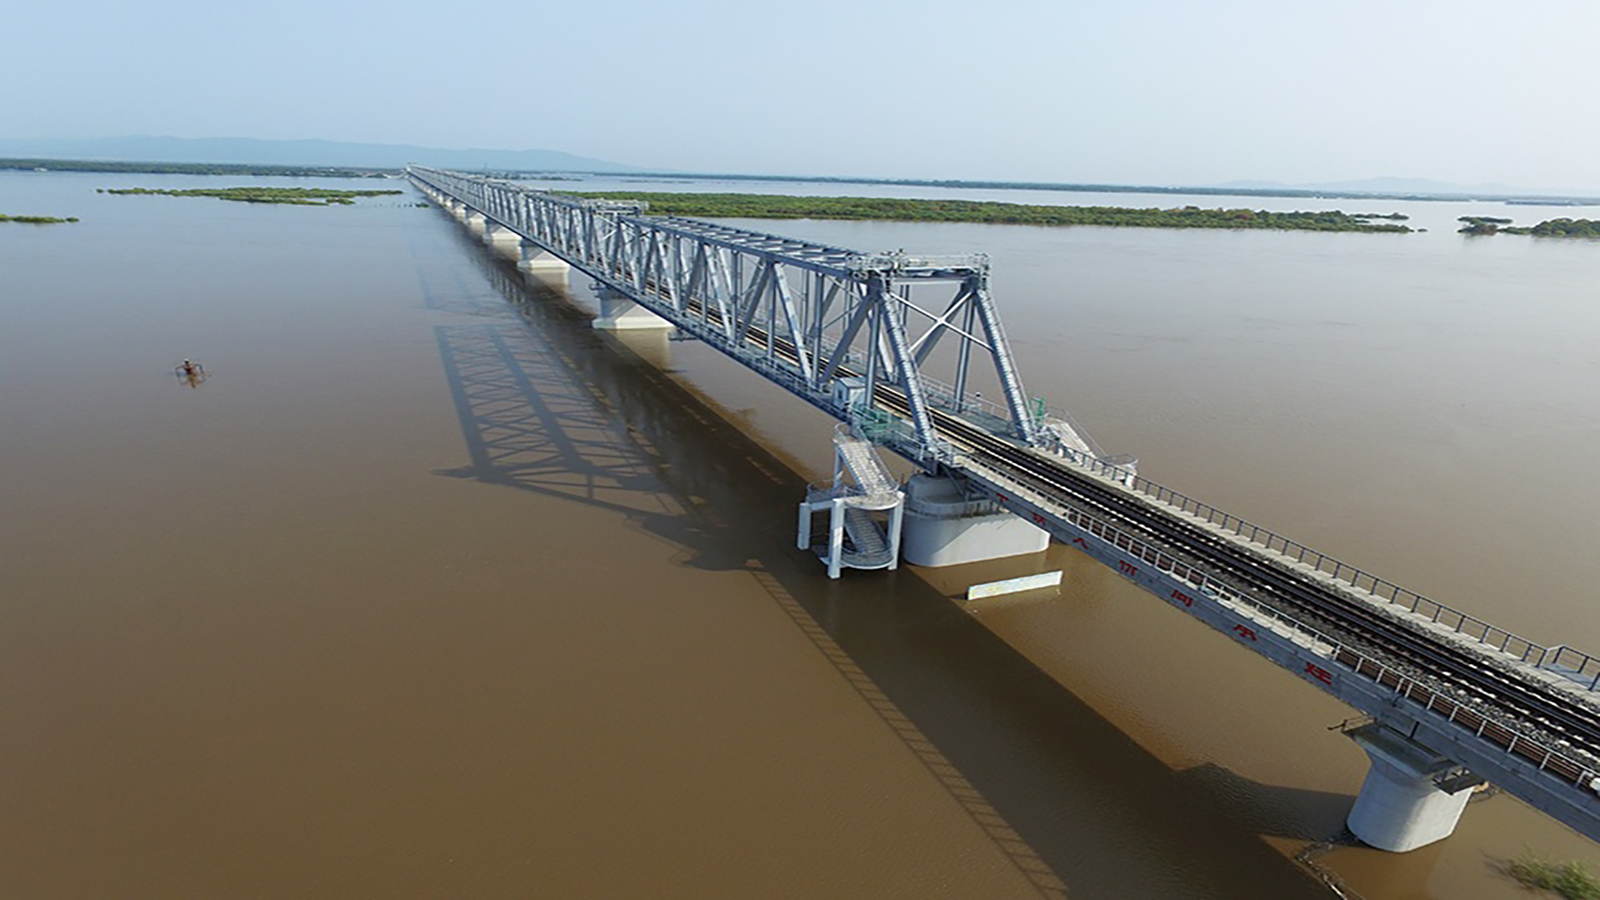 جسر سكك حديد عابر لنهر بين الصين وروسيا